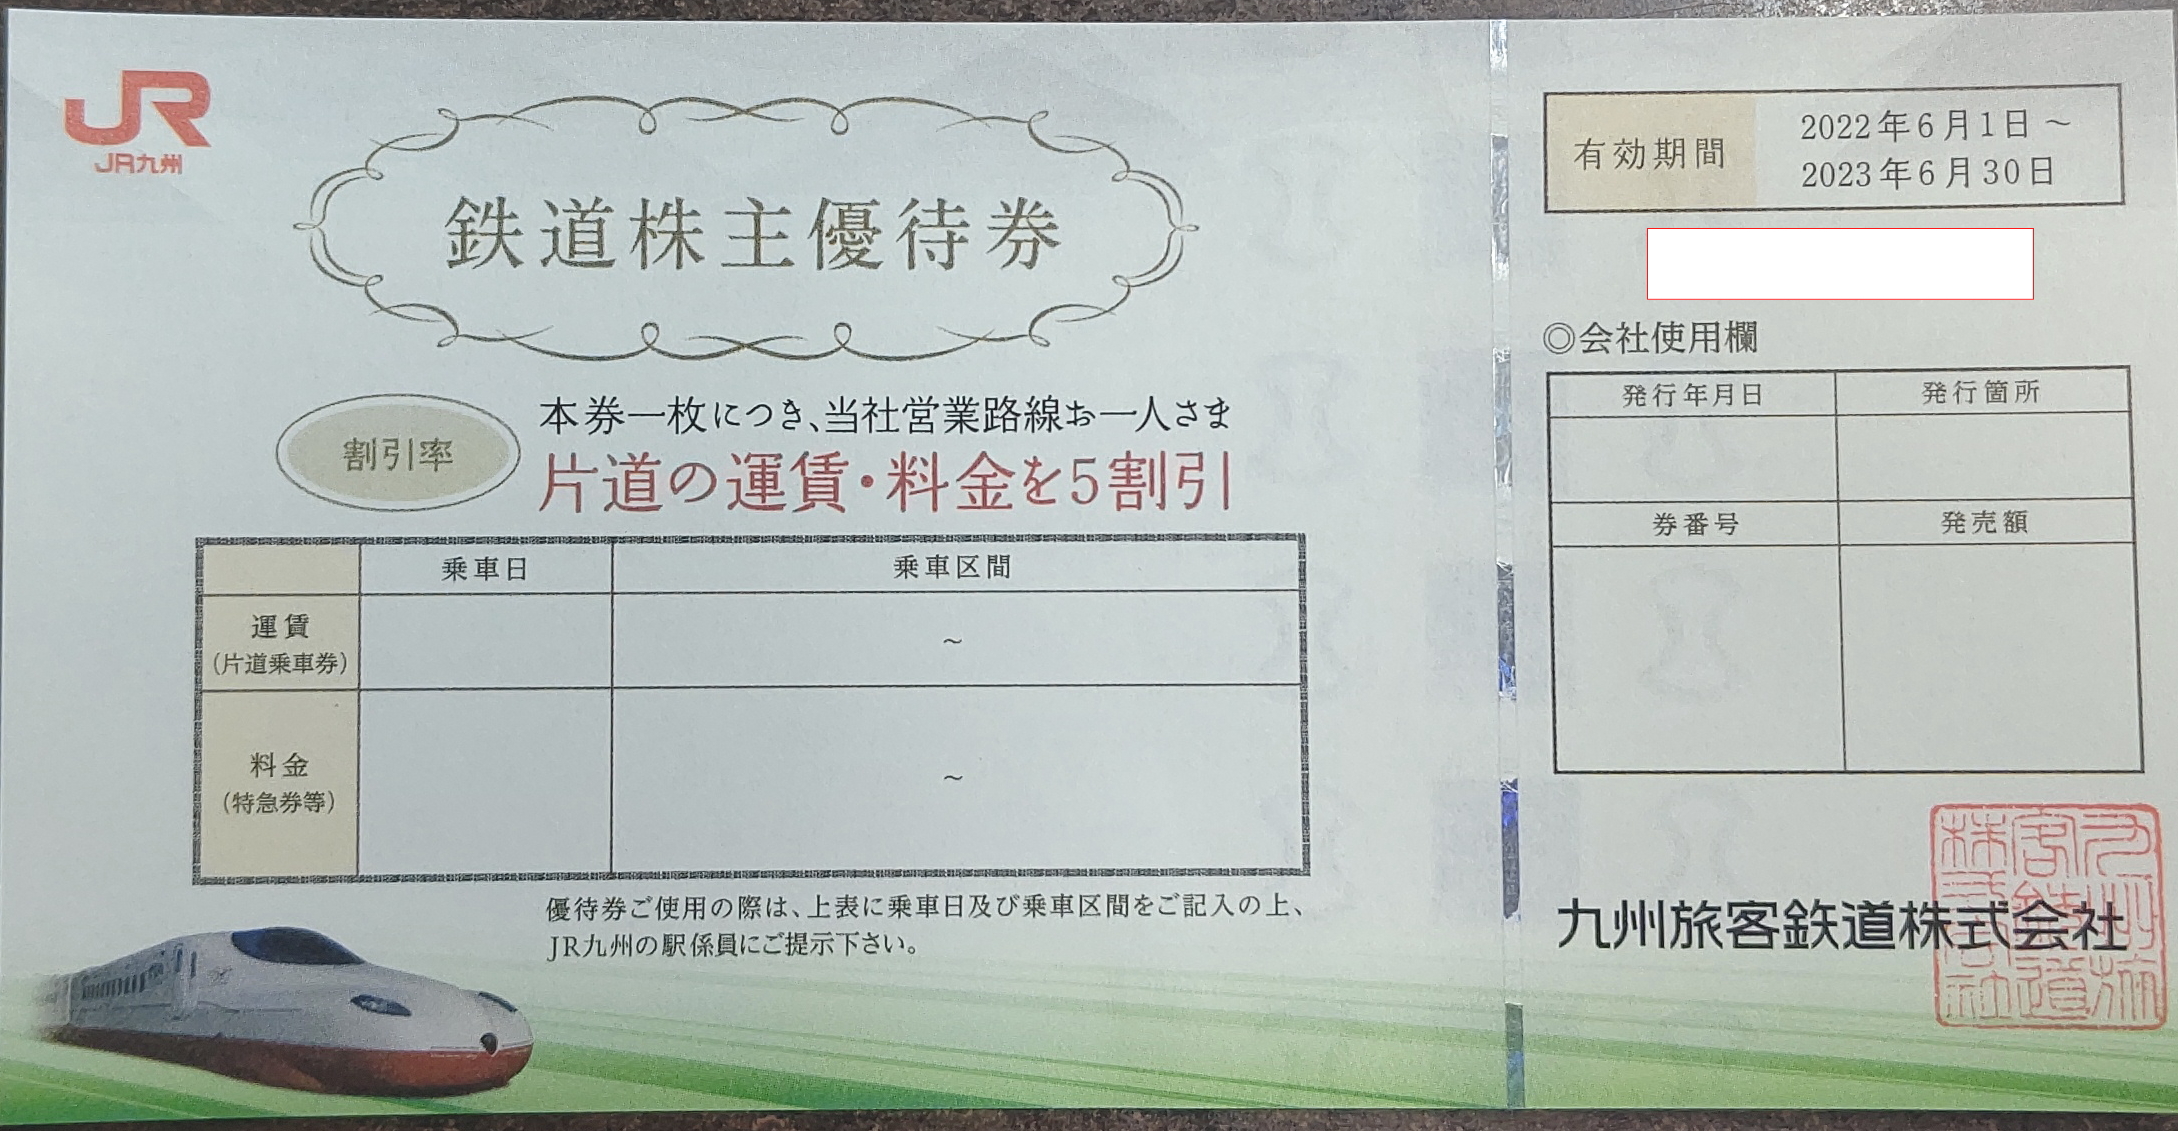 チケットカプリ オンラインストア / 【JR九州】株主優待50%割引券 2023